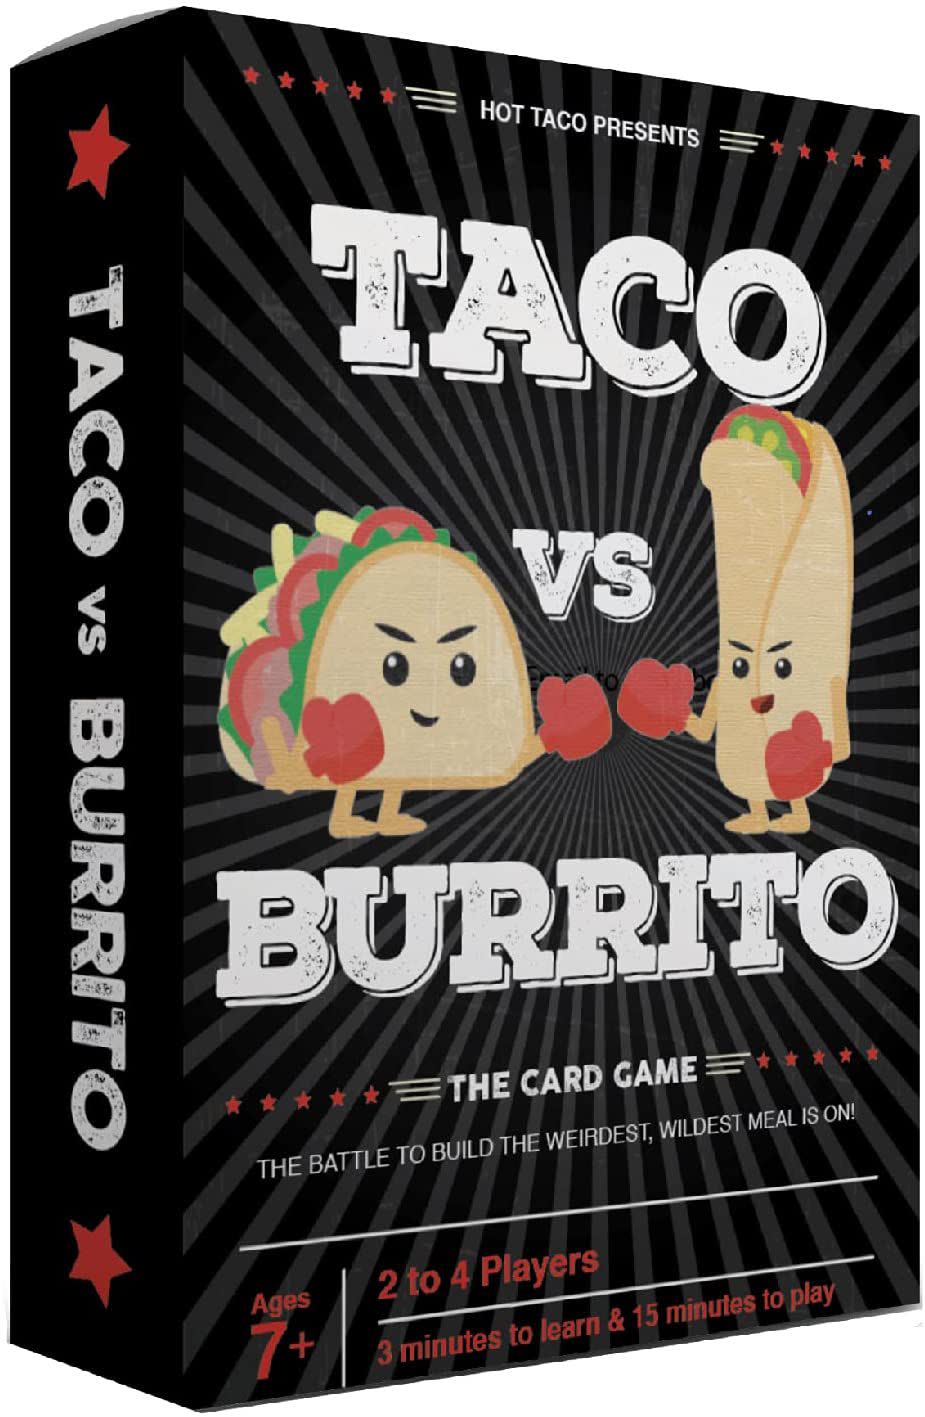 Taco vs Burrito Game